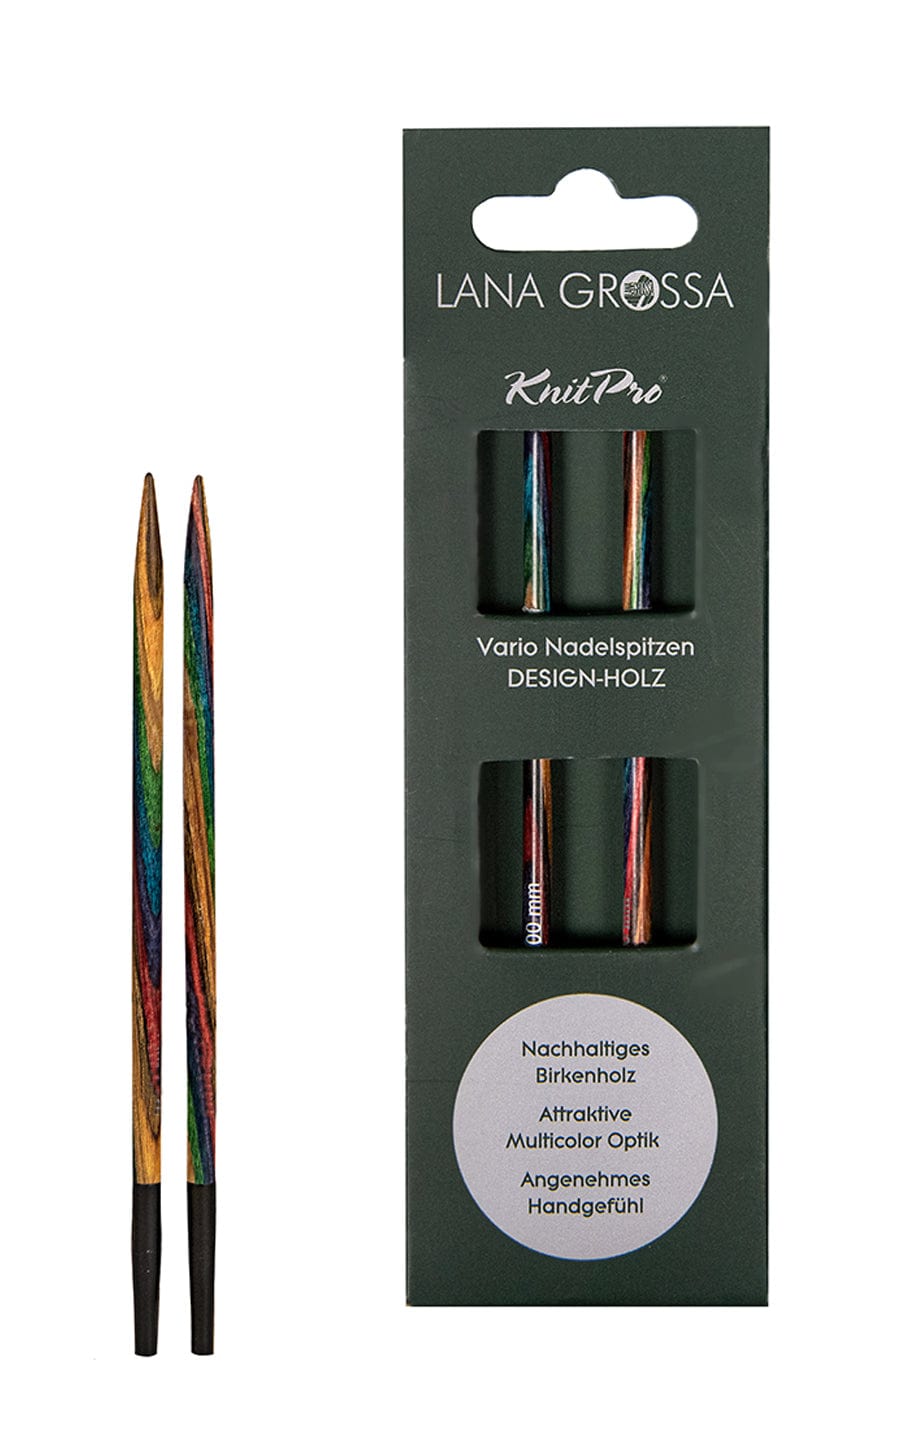 8,0 mm Nadelspitze Vario aus Holz - neue Verpackung von LANA GROSSA jetzt online kaufen bei OONIQUE